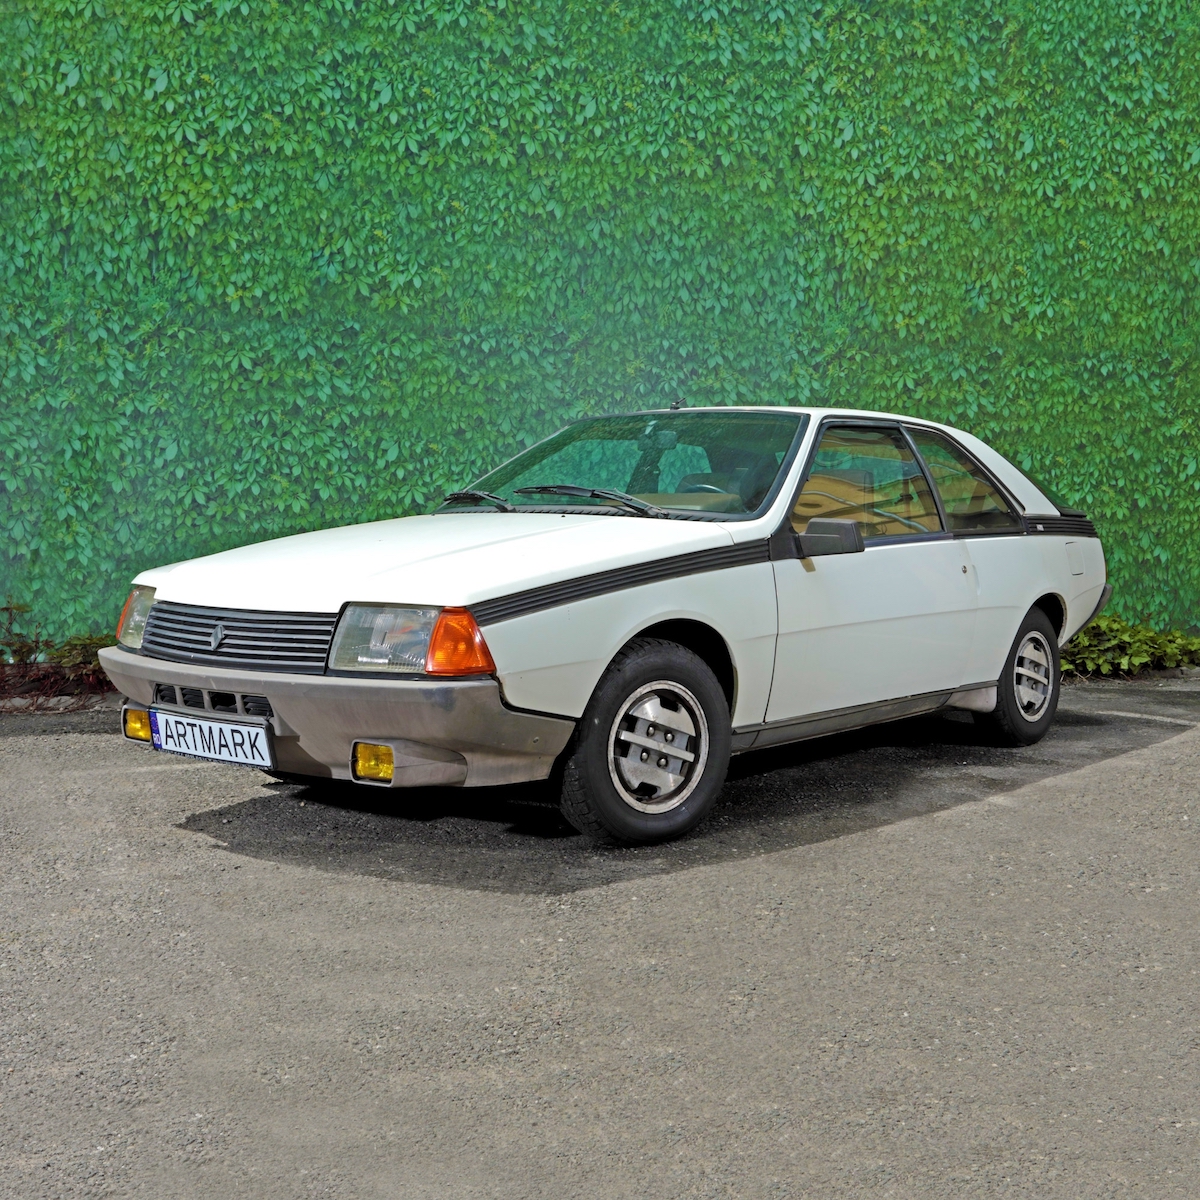 Renault din 1983 ce a aparținut Zoiei Ceaușescu, scos la licitație pentru 500 de euro. Mașina a primit-o de la soții Ceaușescu, în momentul căsătoriei cu sibianul Mircea Oprean